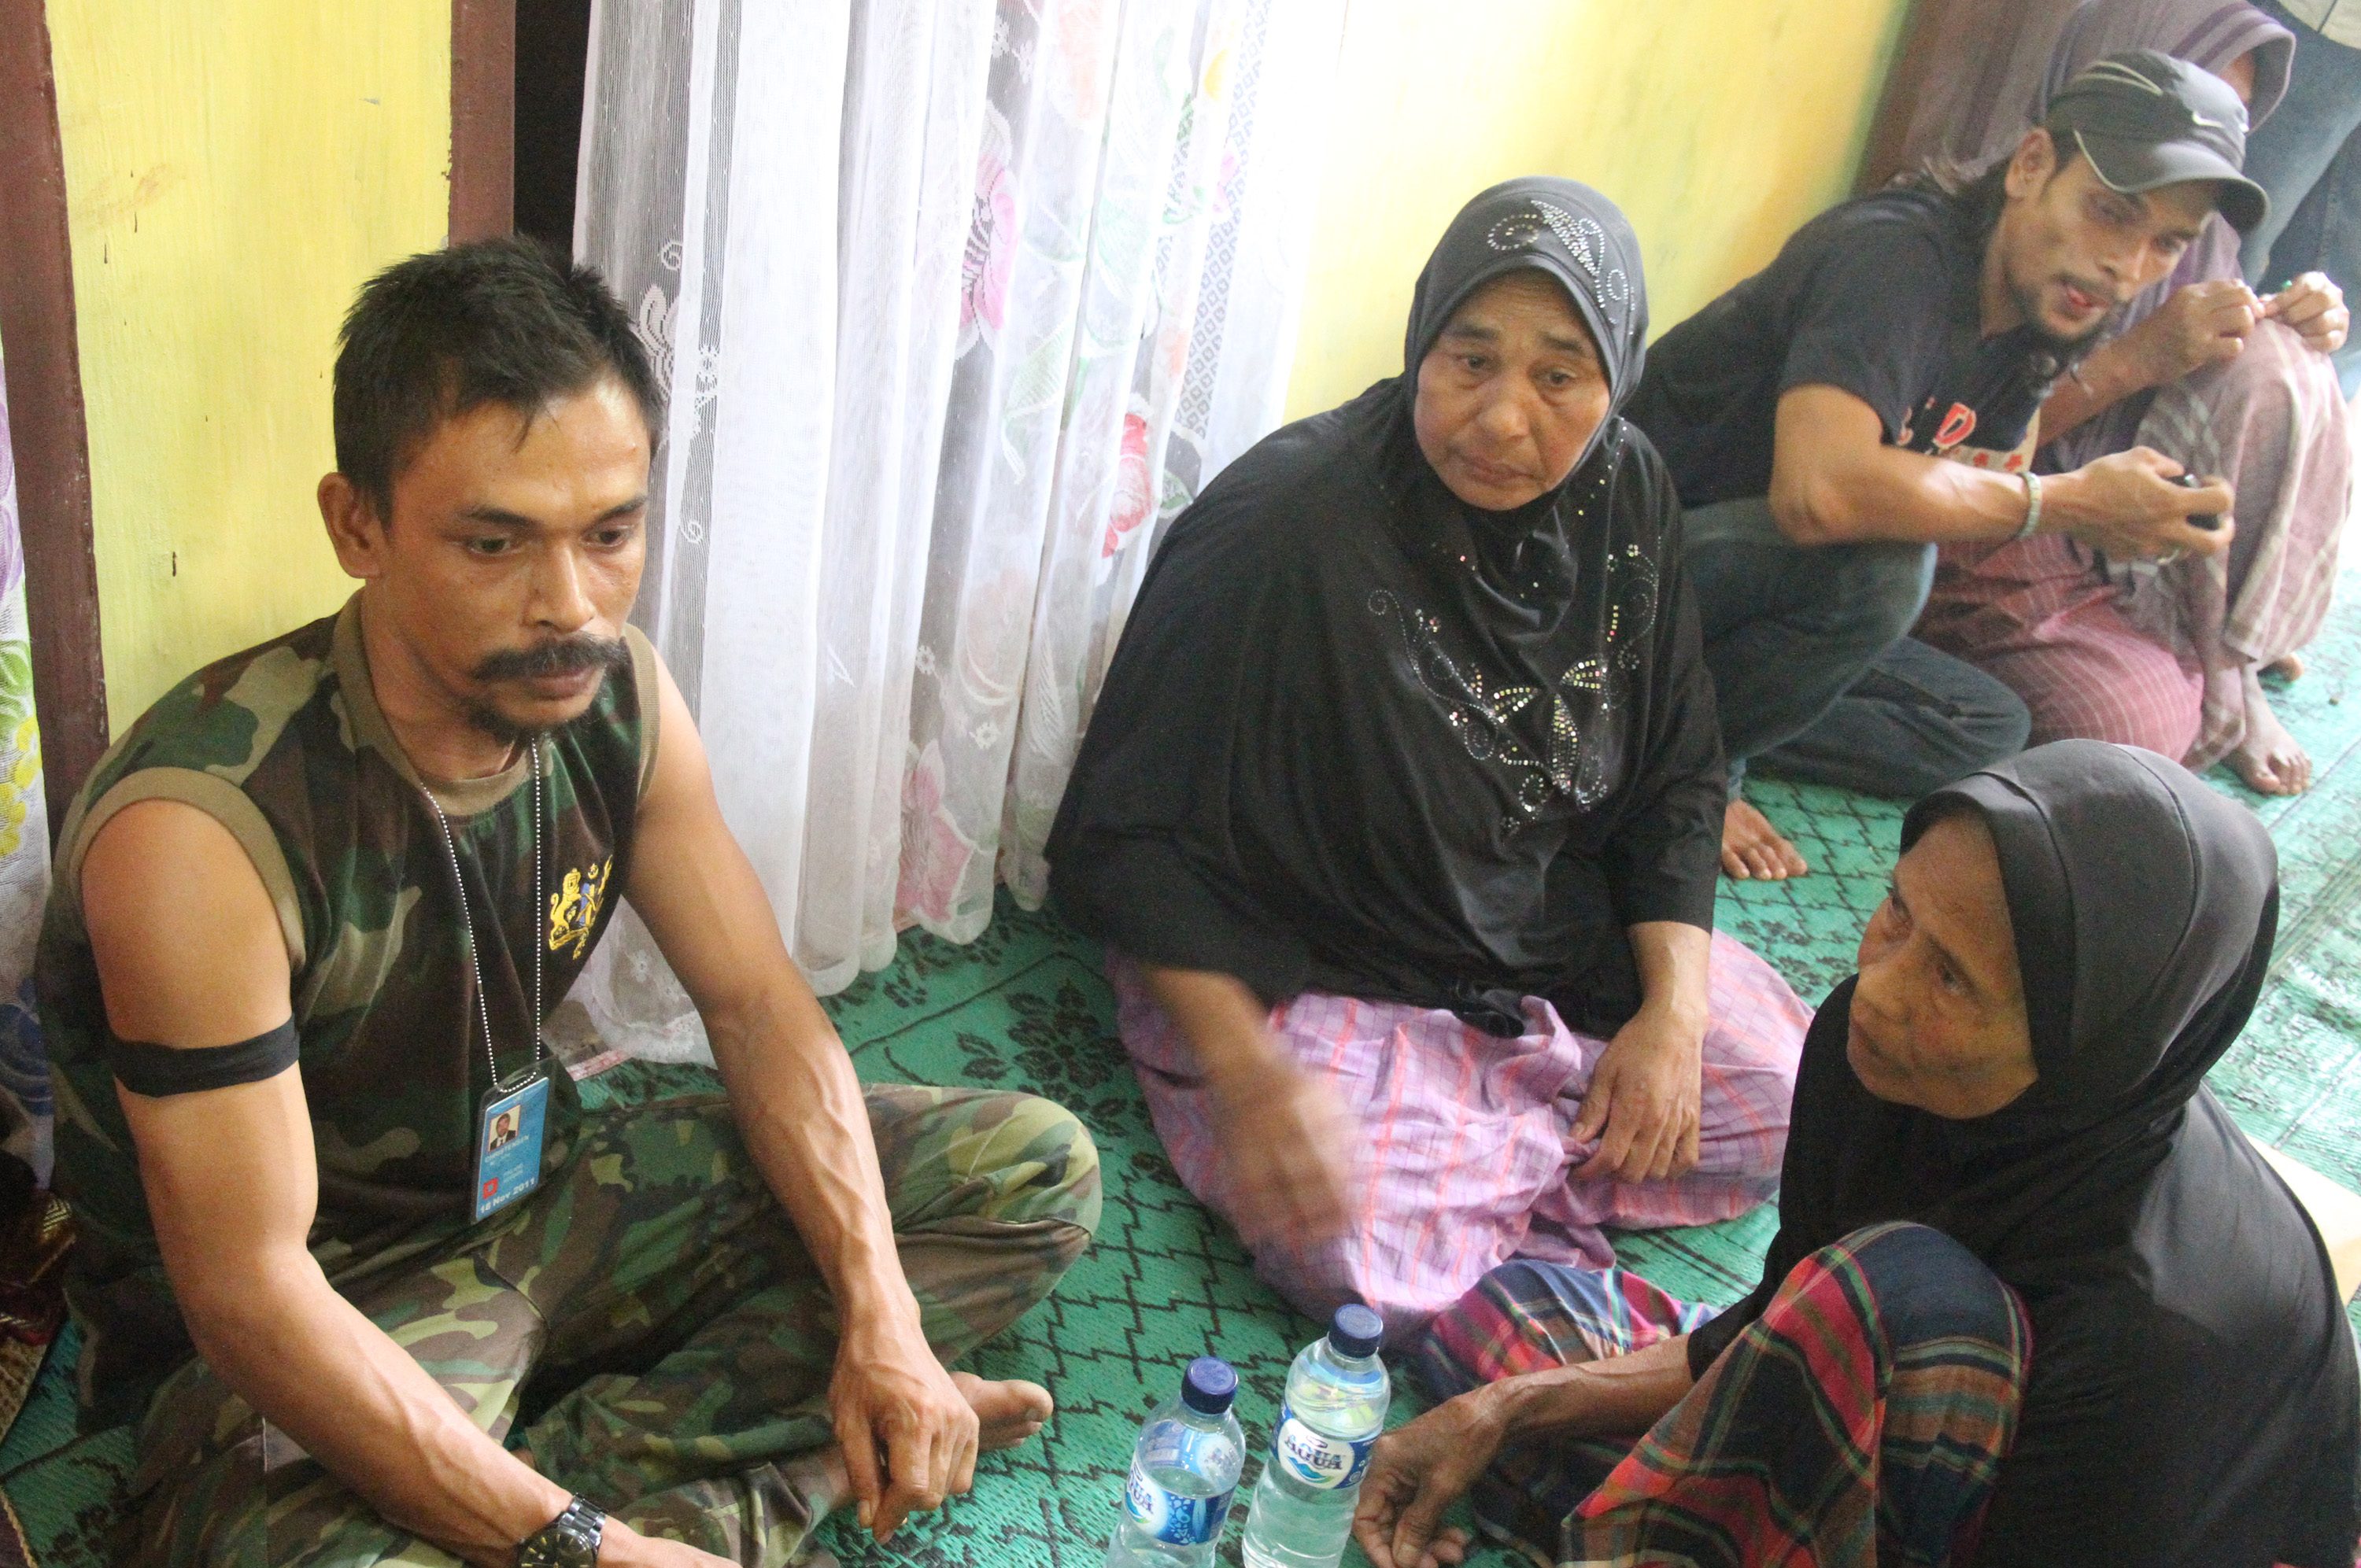 Pimpinan kelompok sipil bersenjata Aceh, Din Minimi (kiri), di kediaman orangtuanya saat menyerahkan diri pada 29 Desember 2012. Foto oleh Syifa Yulinnas/Antara
 